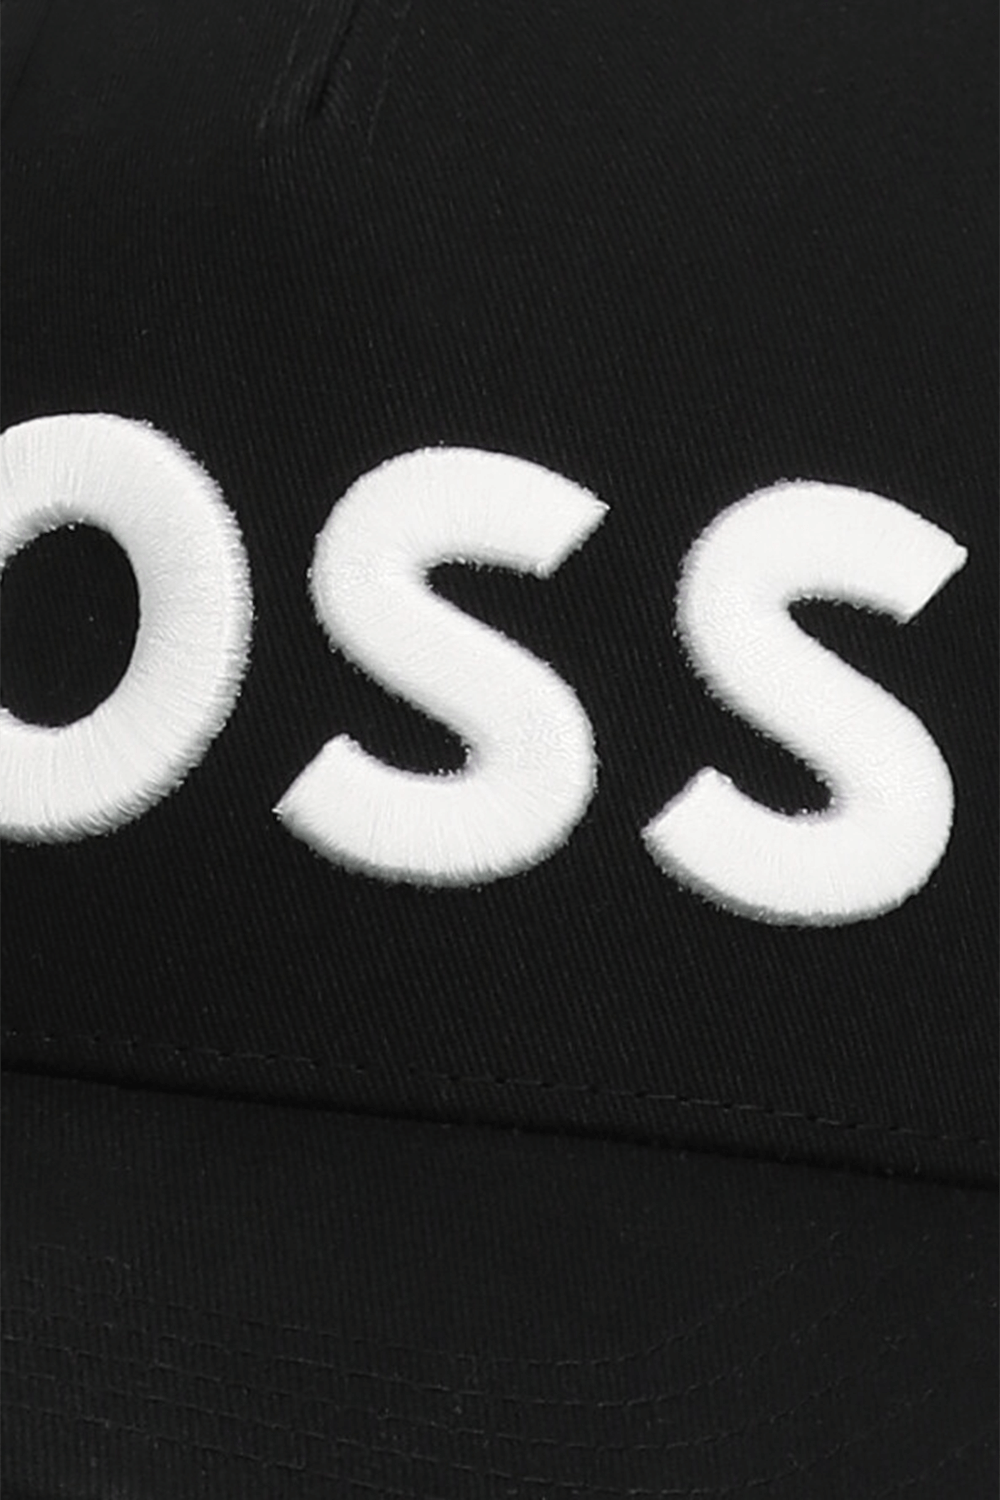 כובע מצחייה עם לוגו BOSS